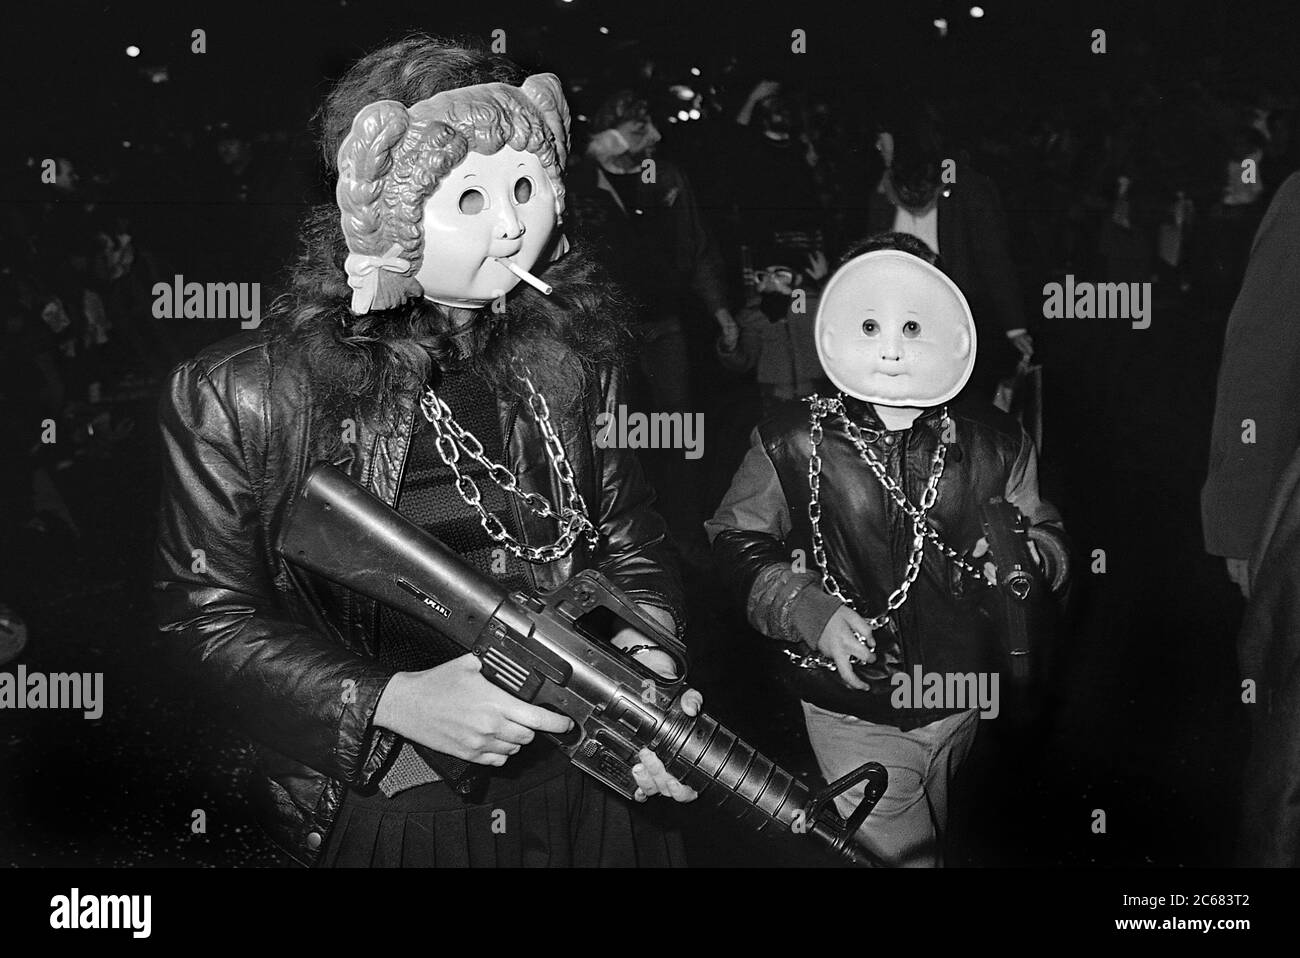 Costumi di Cavage Patch al Greenwich Village Halloween Parade, New York City, USA negli anni '80 fotografati con film in bianco e nero di notte. Foto Stock